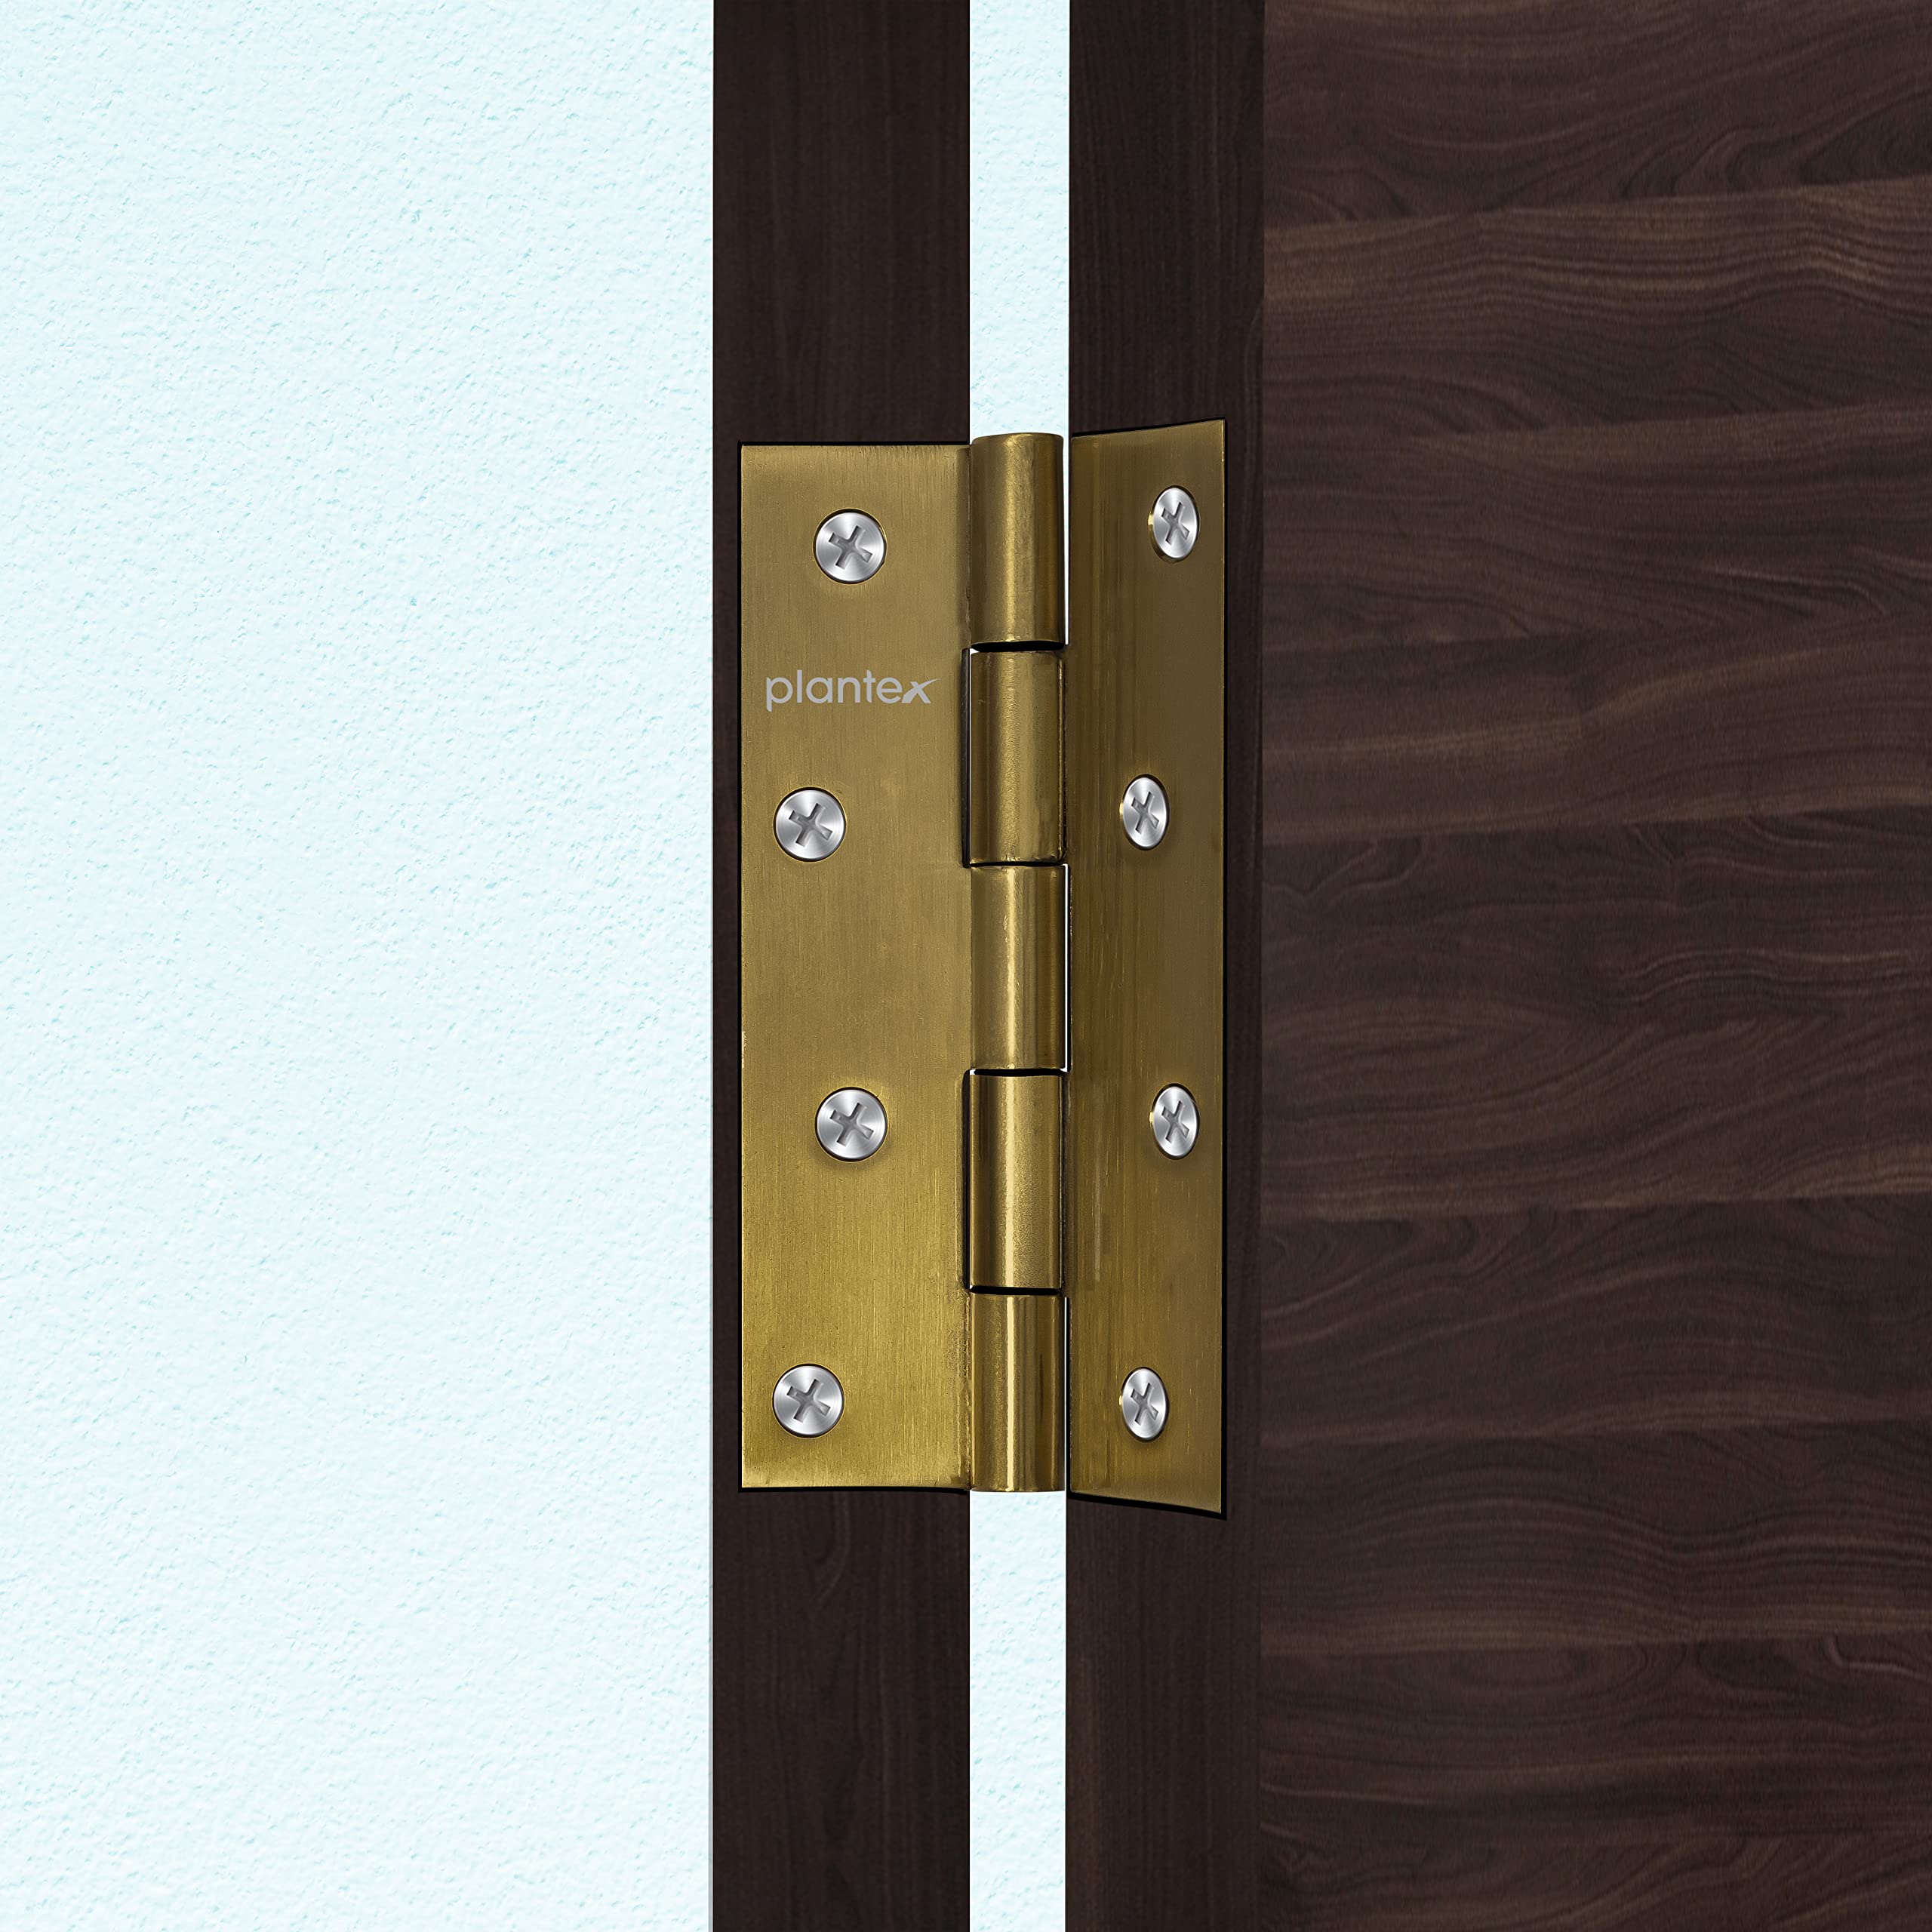 Plantex Heavy Duty Stainless Steel Door Butt Hinges 5 inch x 12 Gauge/2.5 mm Thickness Home/Office/Hotel for Main Door/Bedroom/Kitchen/Bathroom - Pack of 3 (Brass Antique)